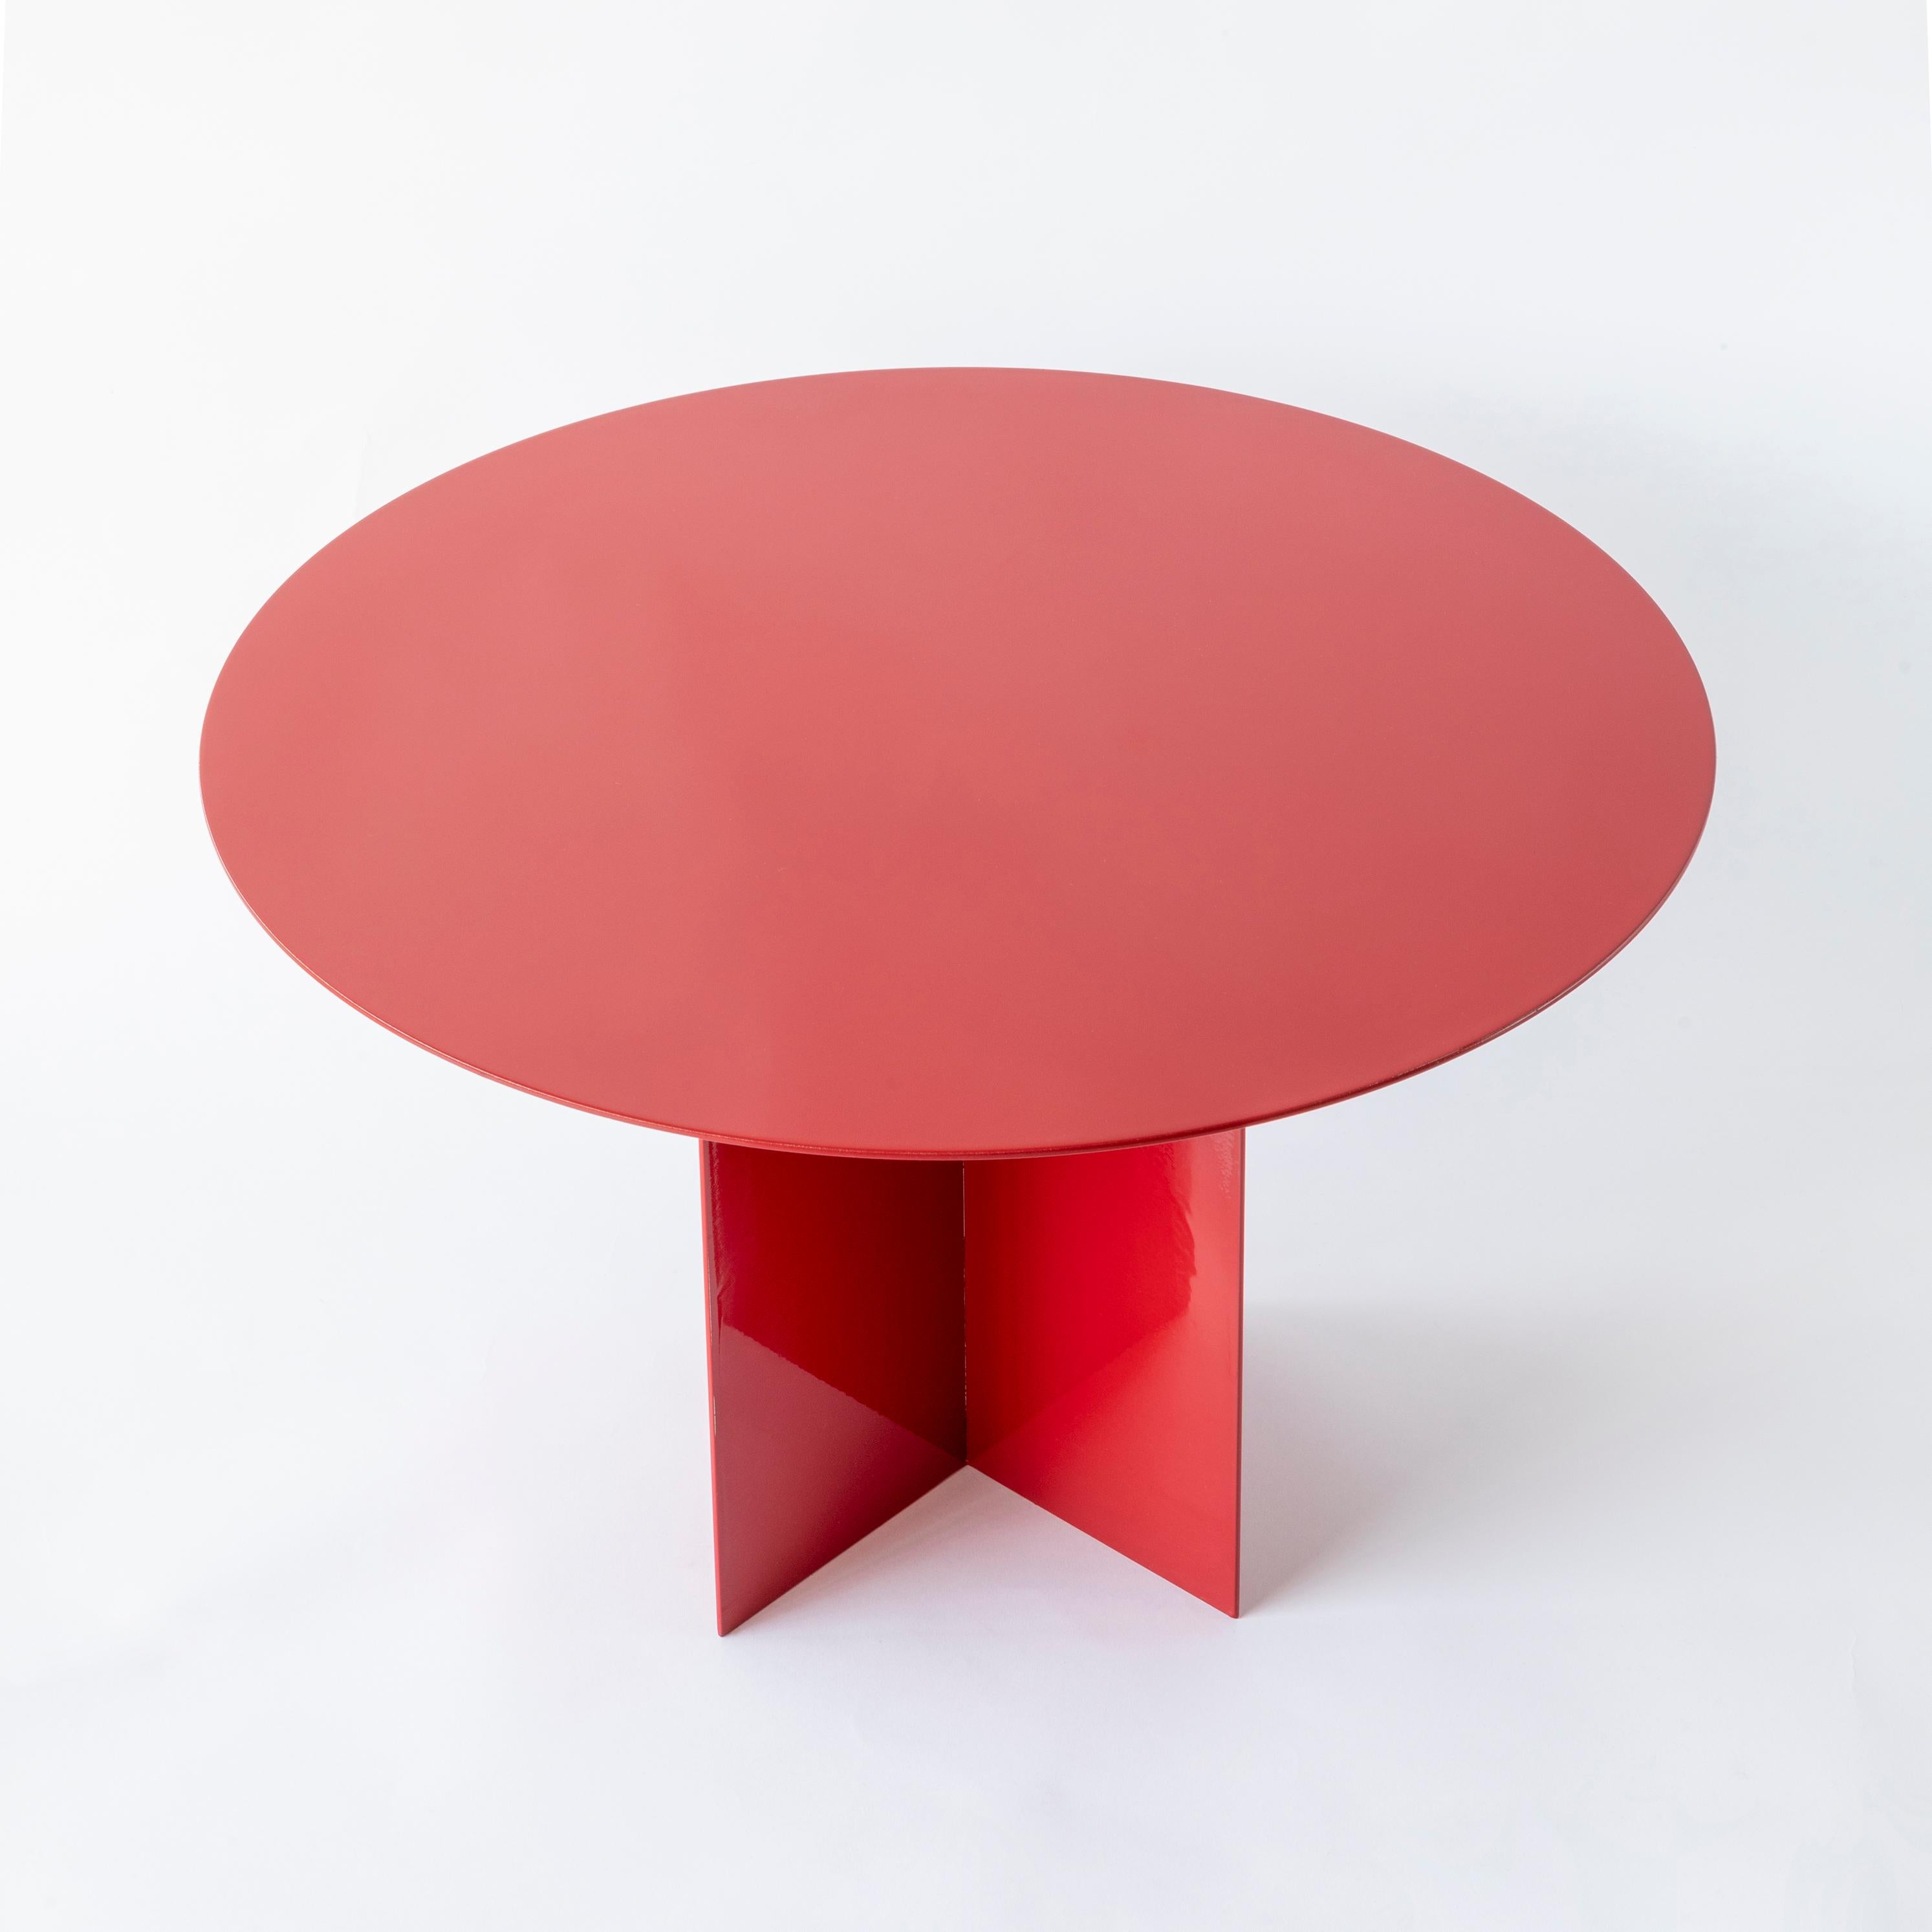 Across Large Round Red Coffee Table by Secondome Edizioni
Concepteur : Claudia Pignatale.
Dimensions : Ø 45 x H 50 cm : Ø 45 x H 50 cm.
MATERIAL : Fer.

Collectional / Production : Secondome. Cette pièce peut être personnalisée. Finitions